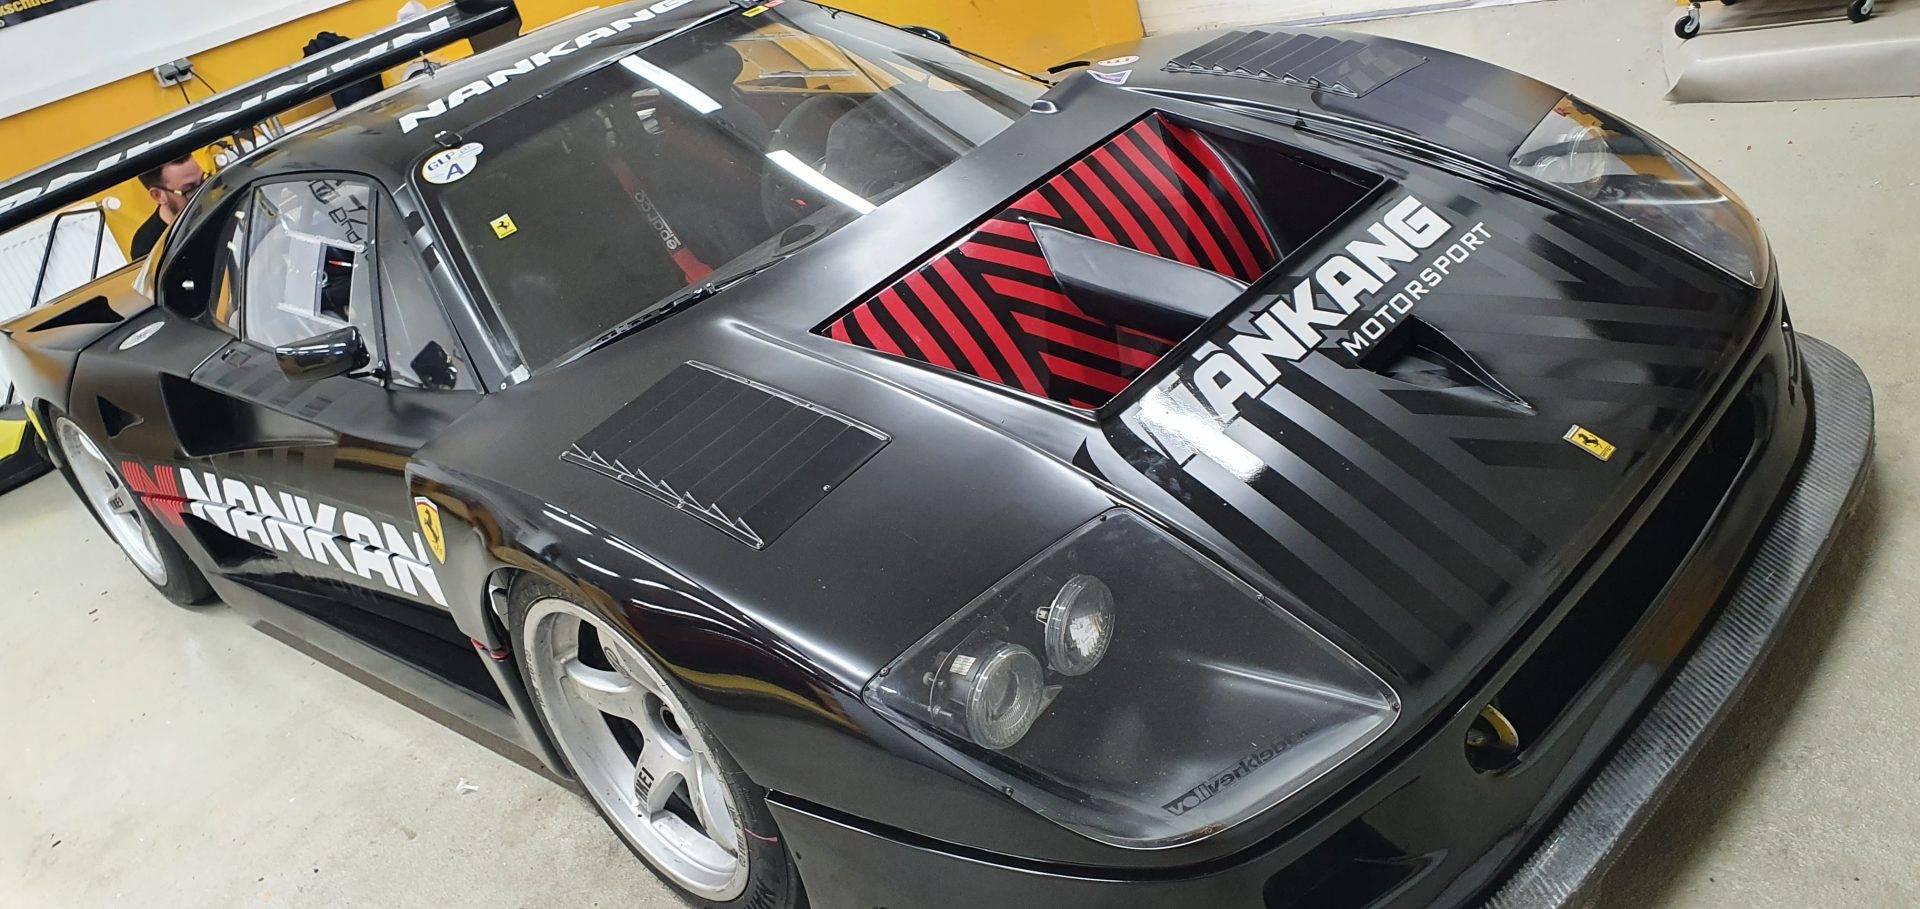 Ferrari F40 semimattschwarz mit Branding